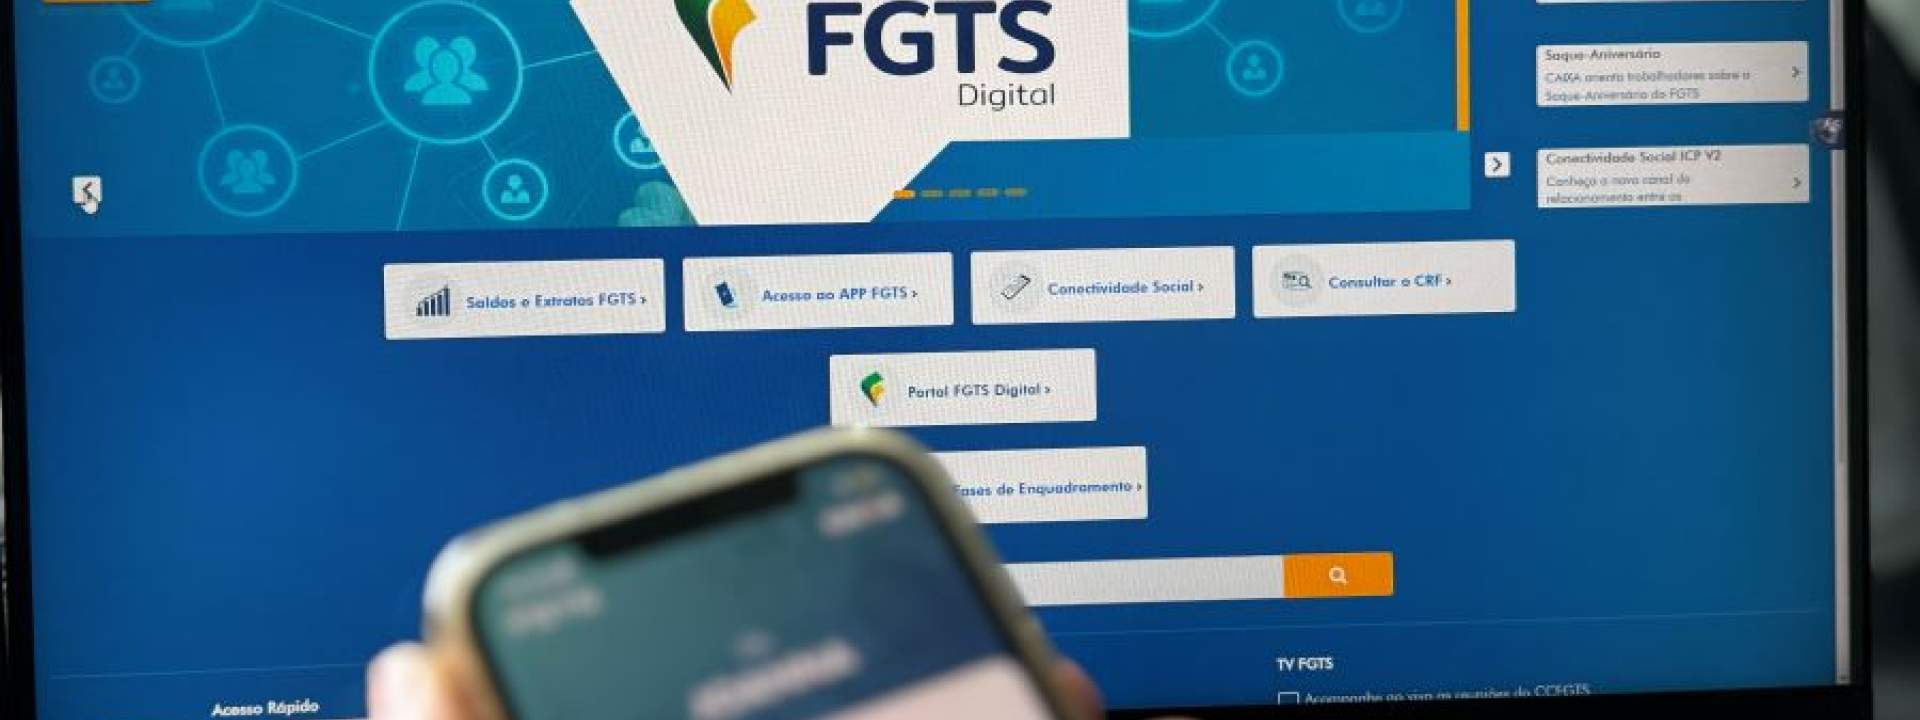 O FGTS Digital entra em vigor em Março: Saiba como se preparar